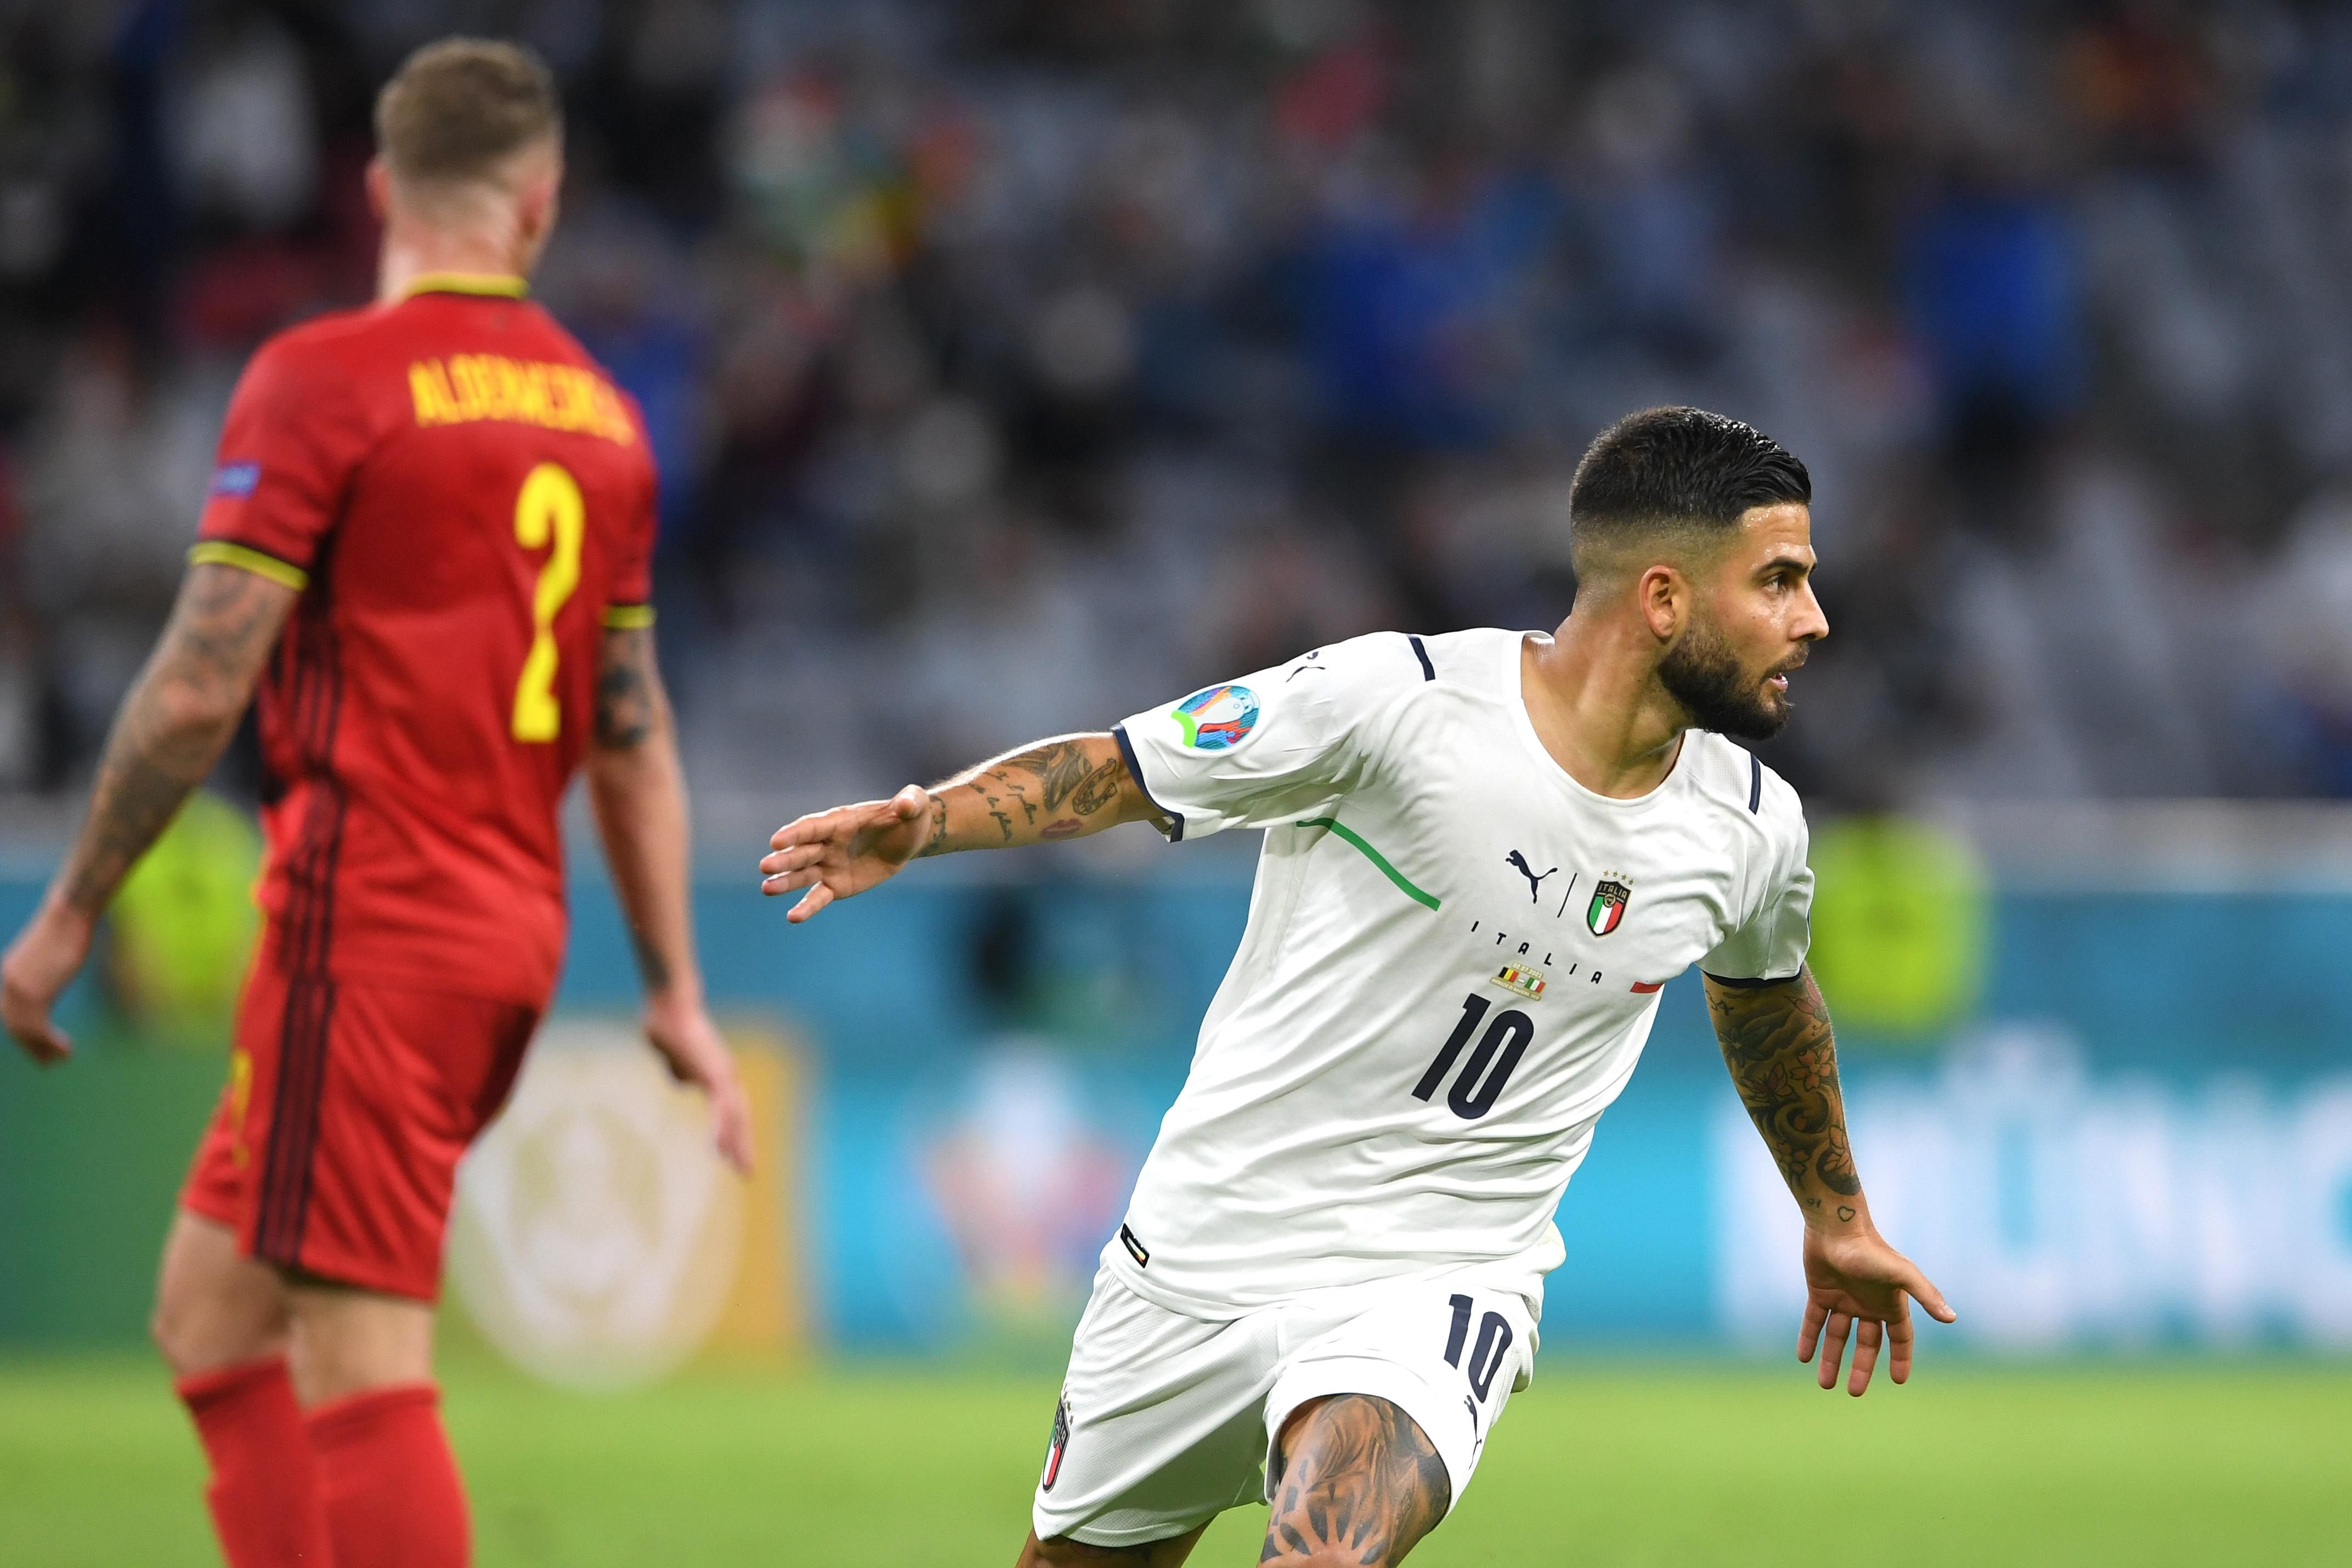 Инсинье забил бешеный гол в матче Италия - Бельгия на Евро-2020